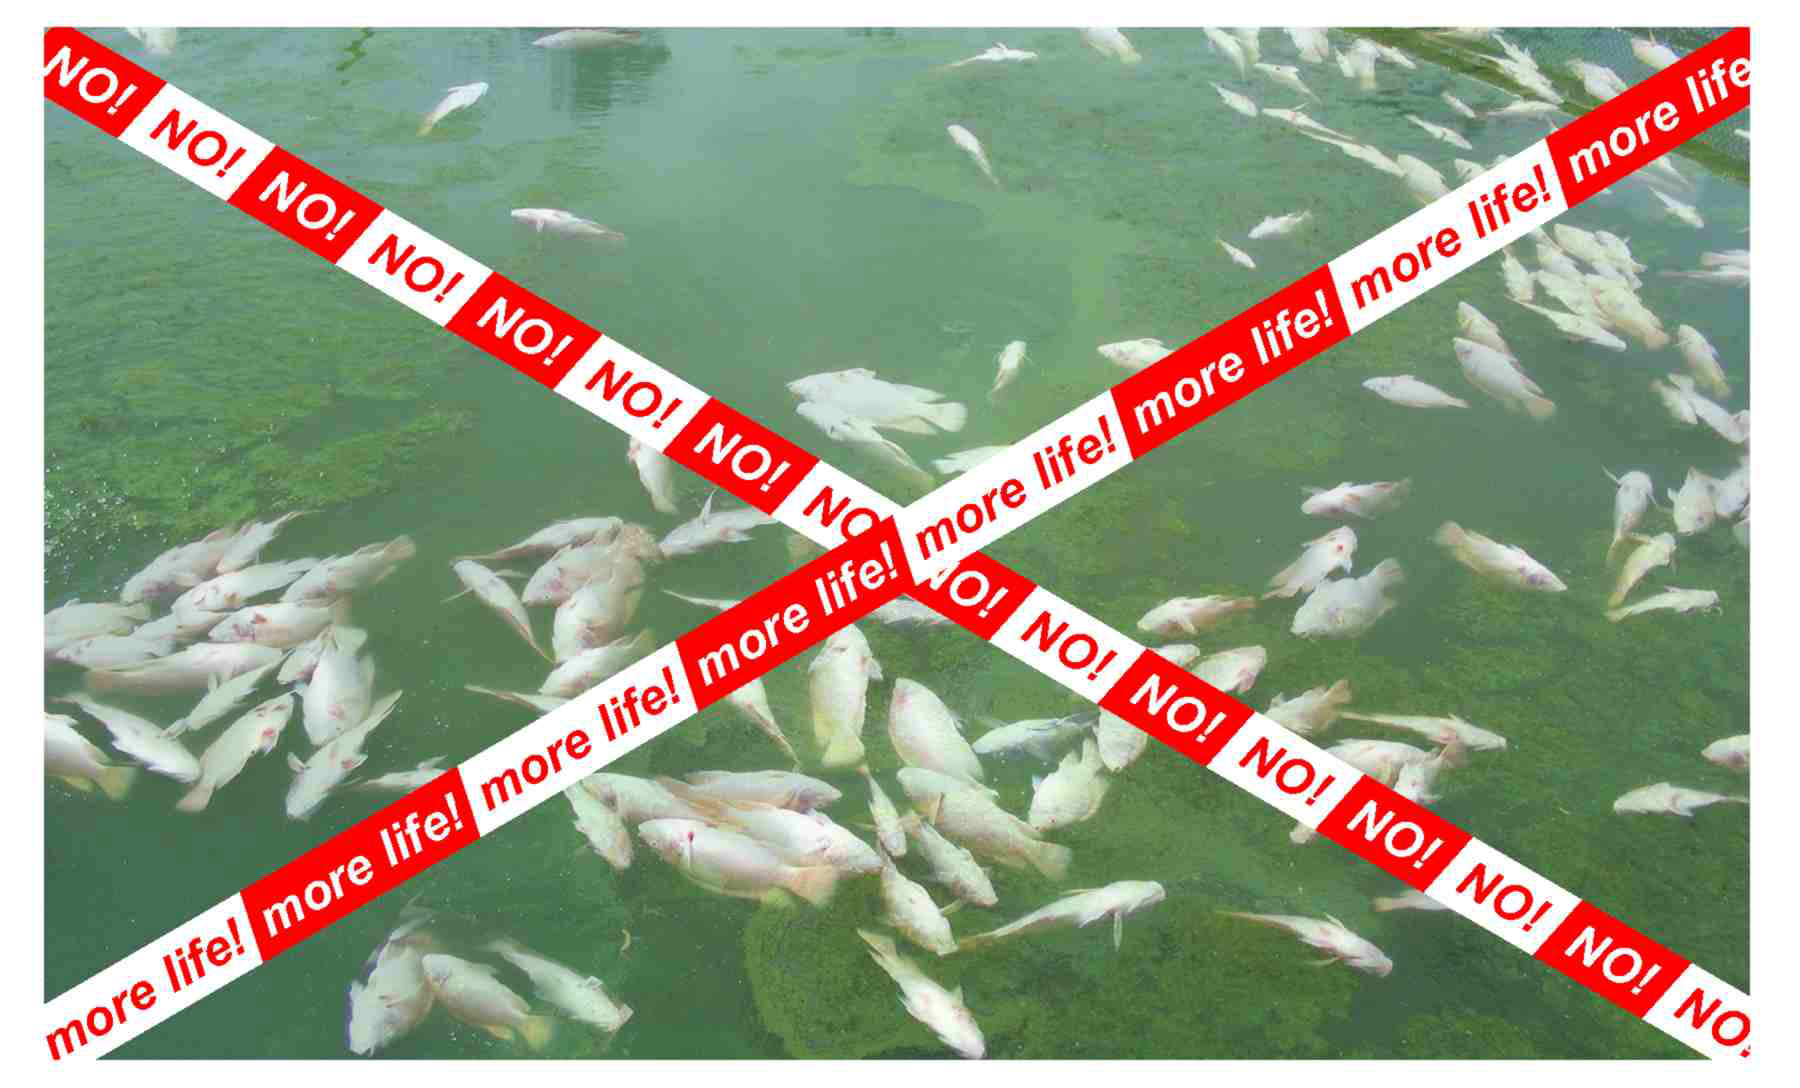 mehr Leben! 
Die Fische töten durch ein Ungleichgewicht der Ionen und die schnelle Vermehrung von Mikroorganismen während der schädlichen Algenblüte.
mehr Leben!
SALTCOM.ORG
STOPPEN wir die GLOBALE ERWÄRMUNG und verhindern, dass viele Naturkatastrophen.
 